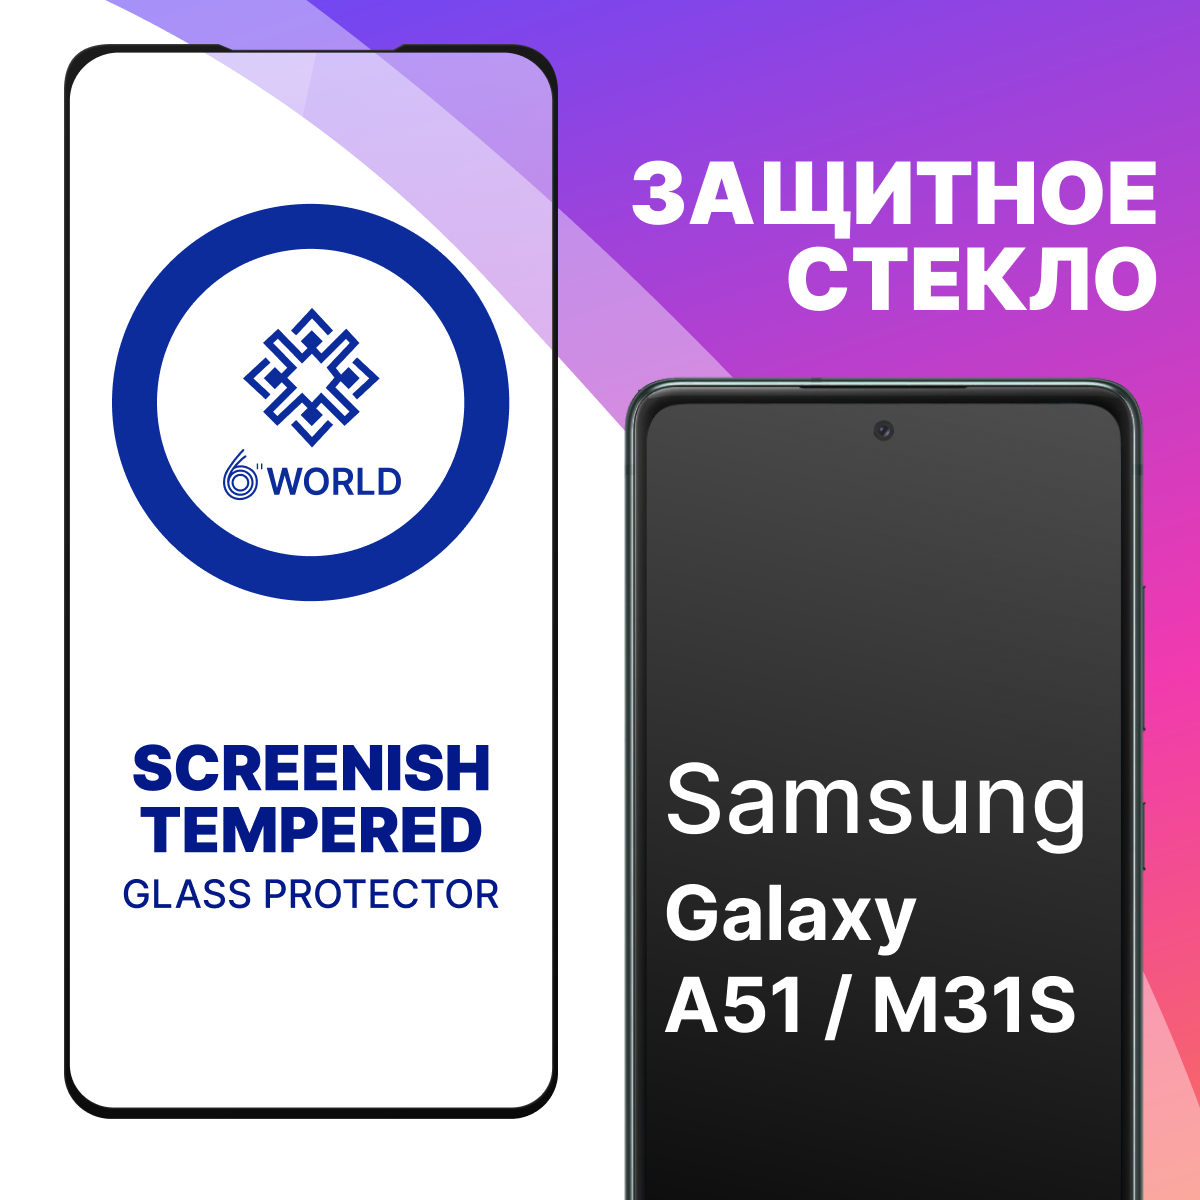 Защитное стекло SCREENISH GLASS для Samsung Galaxy A51 и M31S / Противоударное стекло на весь экран для смартфона Самсунг Галакси А51 М31С